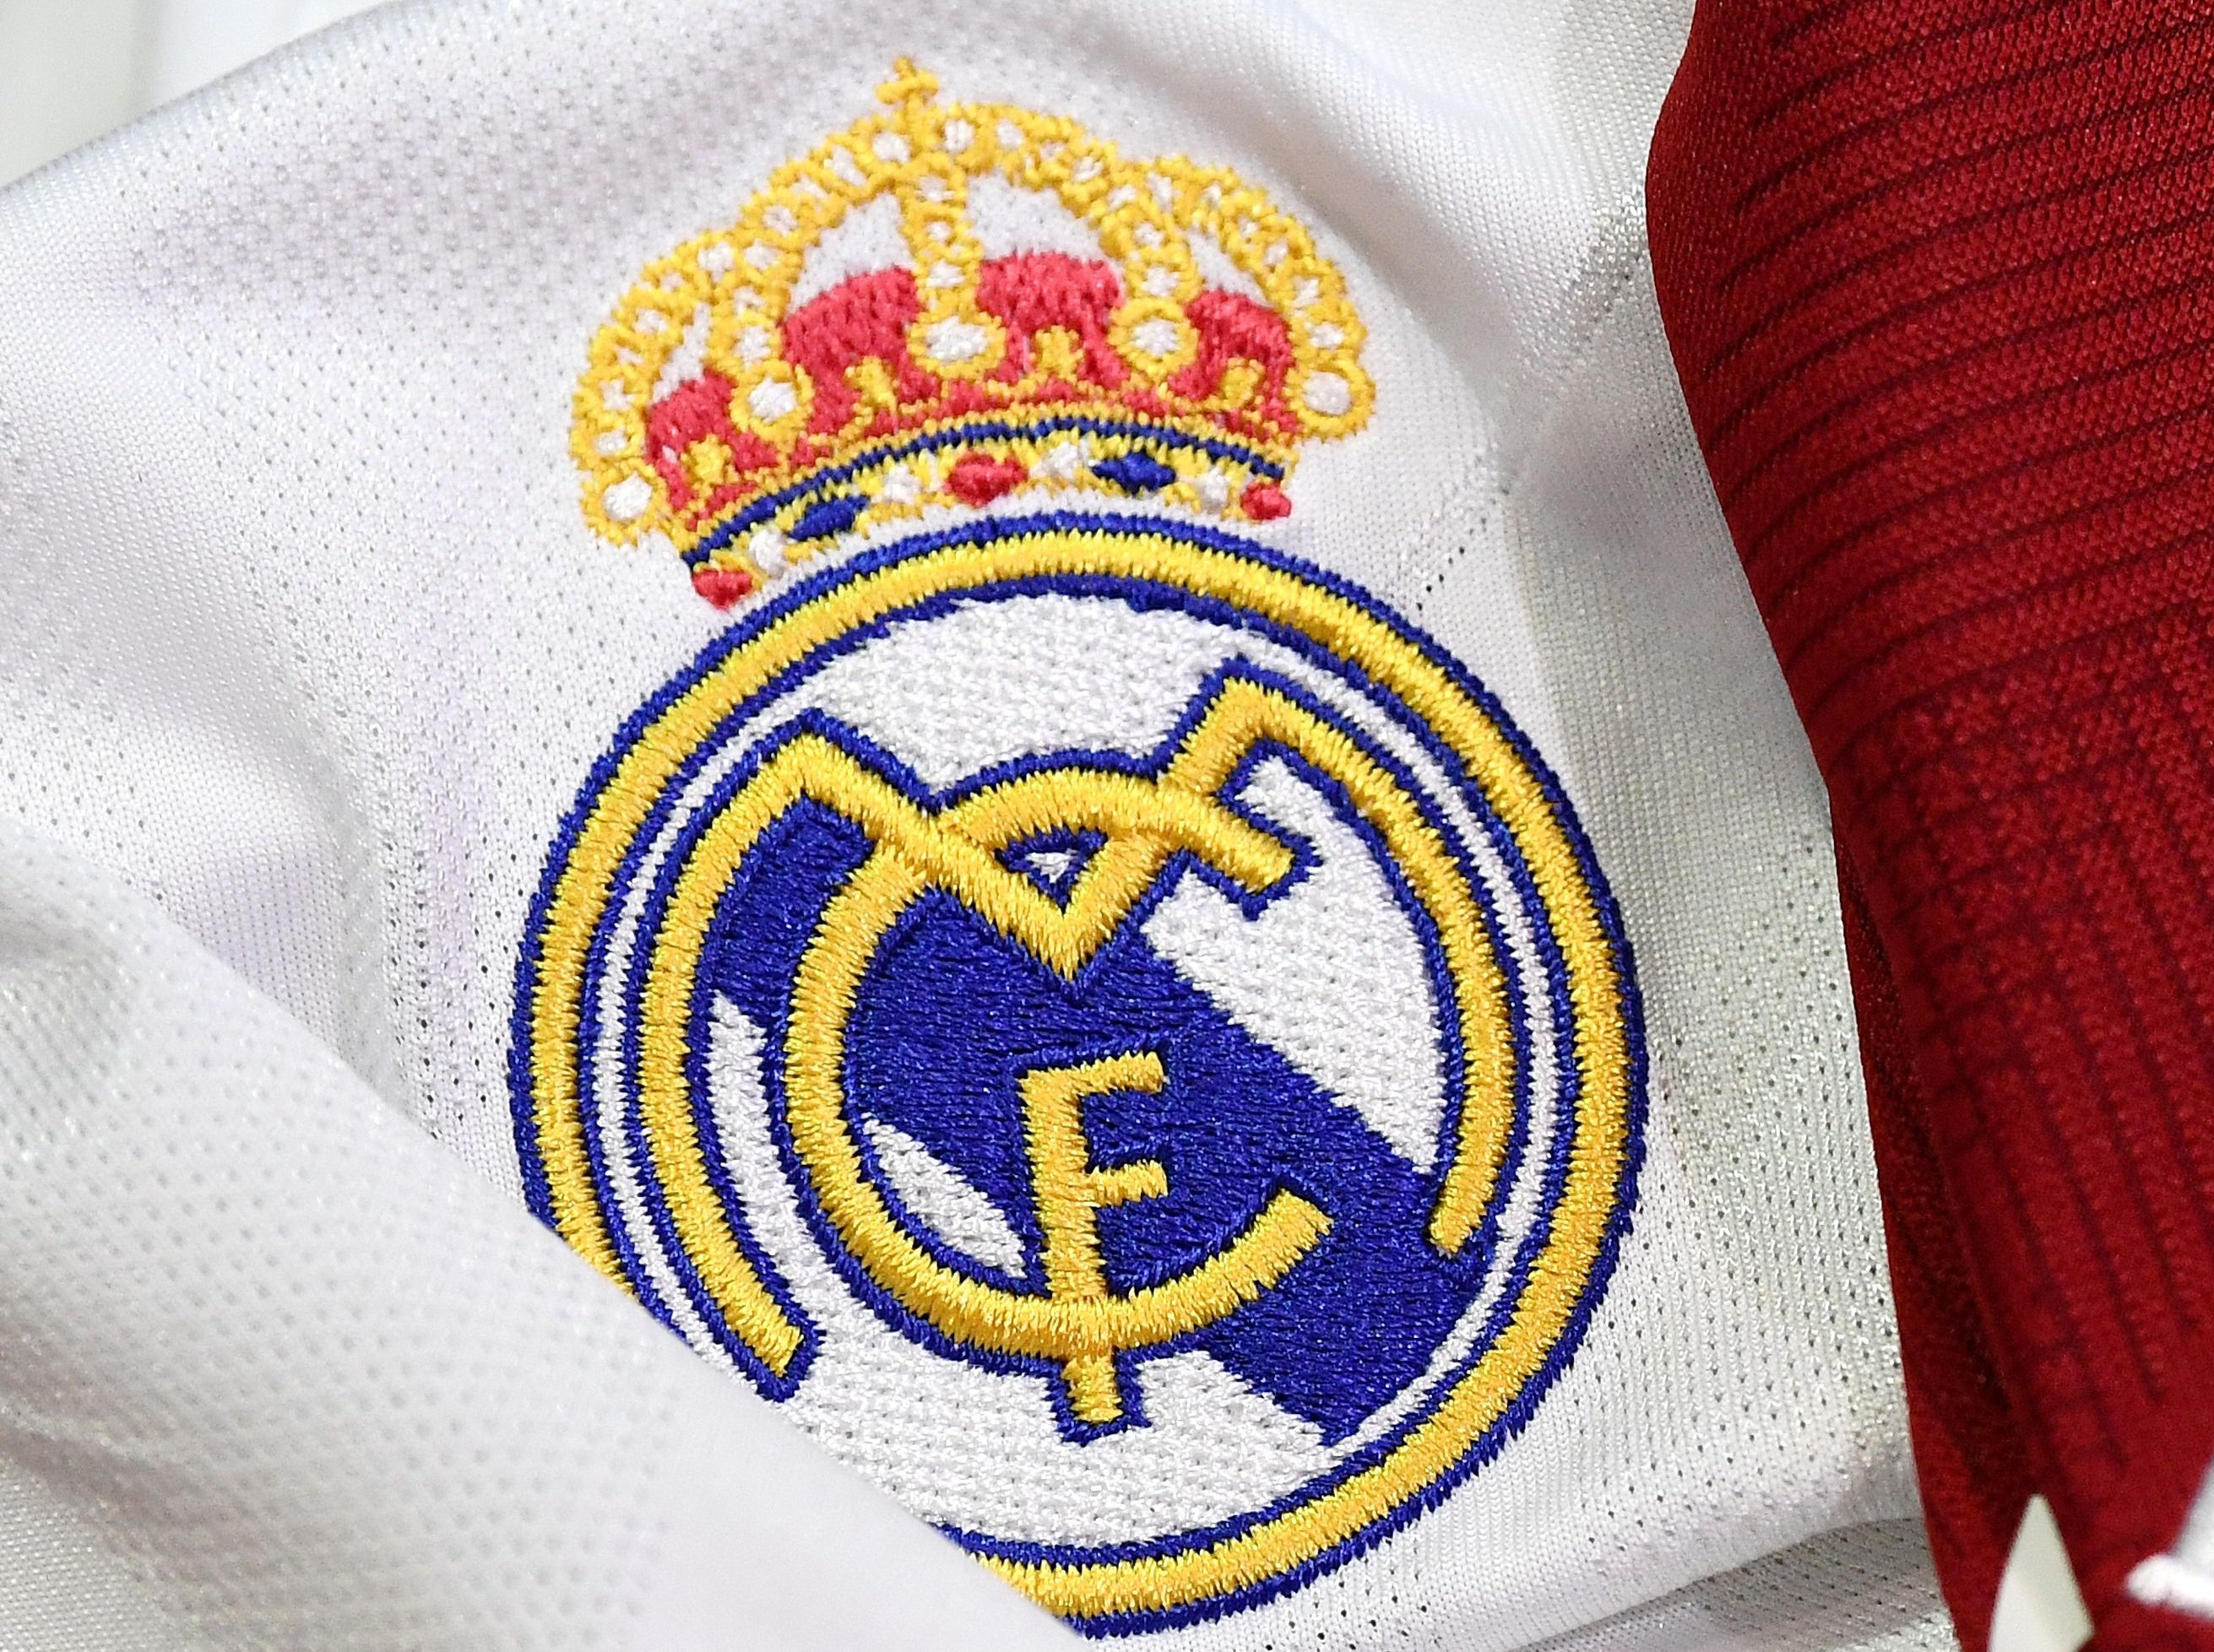 El Real Madrid es el club más valioso de Europa - Fútbol - COPE